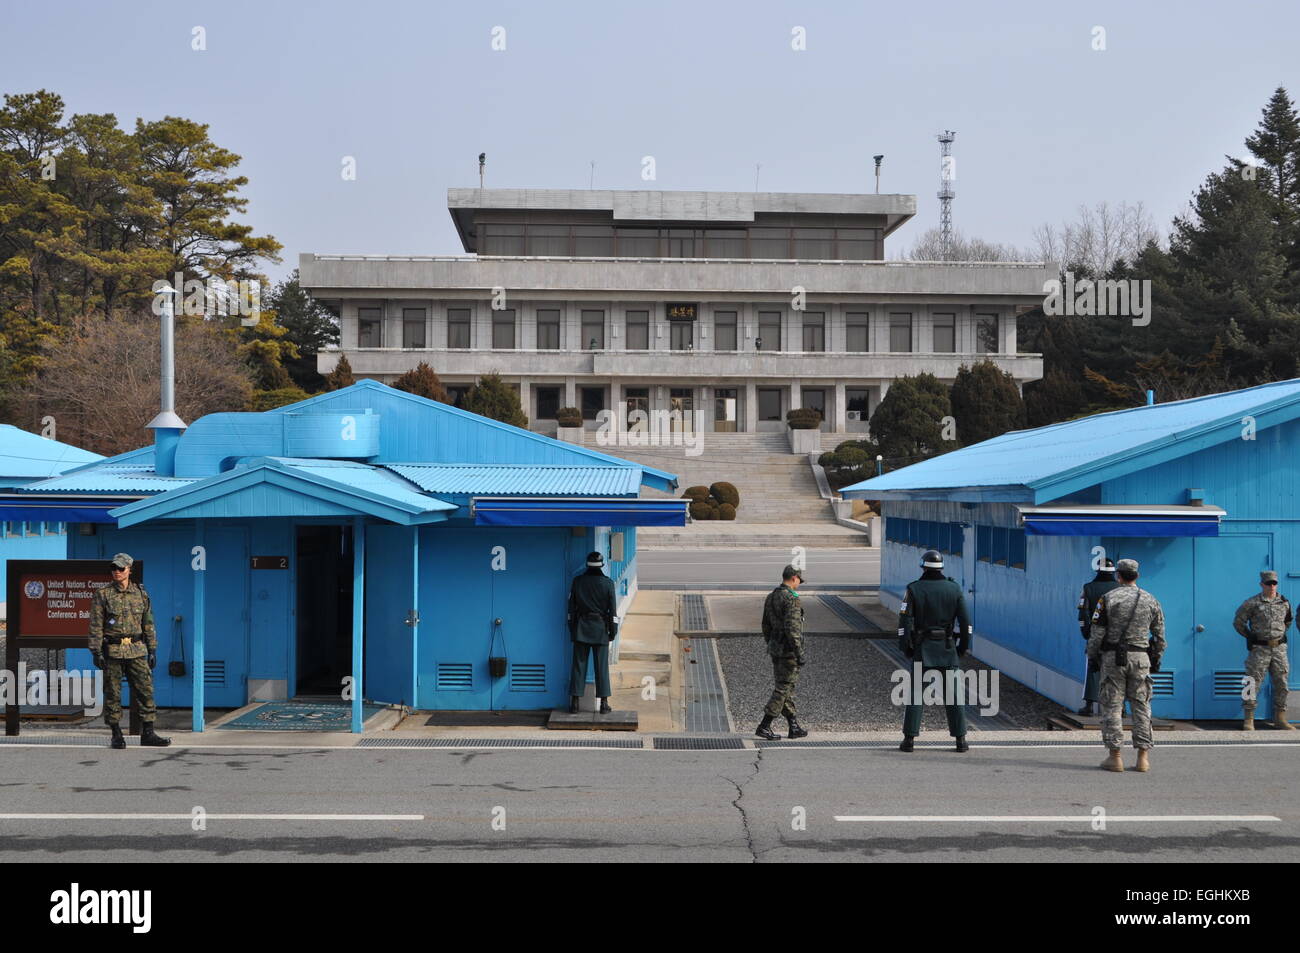 Над границей. Демилитаризованная зона КНДР И Южной Кореи. Демилитаризованная зона (Корея) граница. Граница Северной и Южной Кореи демилитаризованная. Демилитаризованная зона на границе Северной и Южной Кореи.